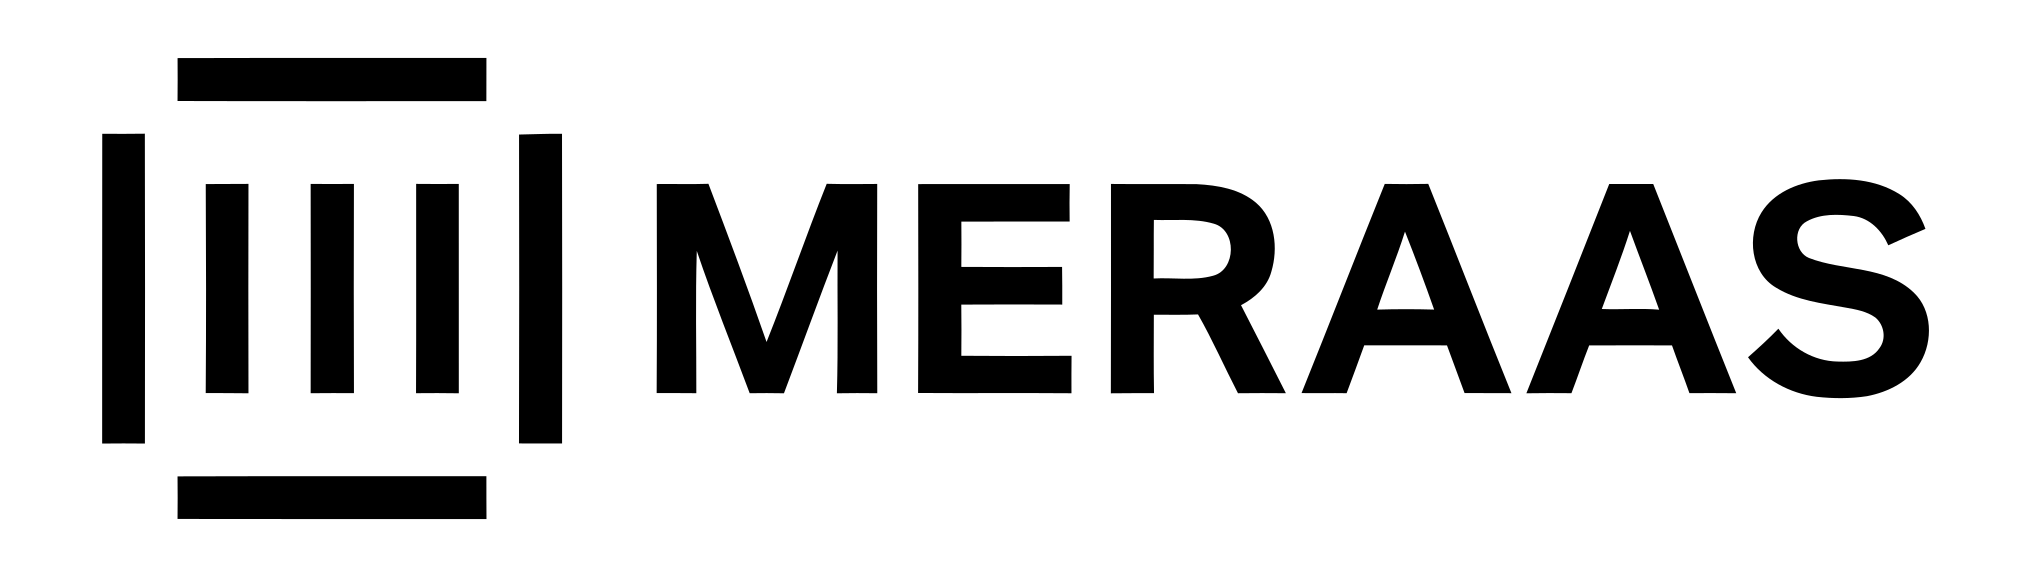 Meraas-logo